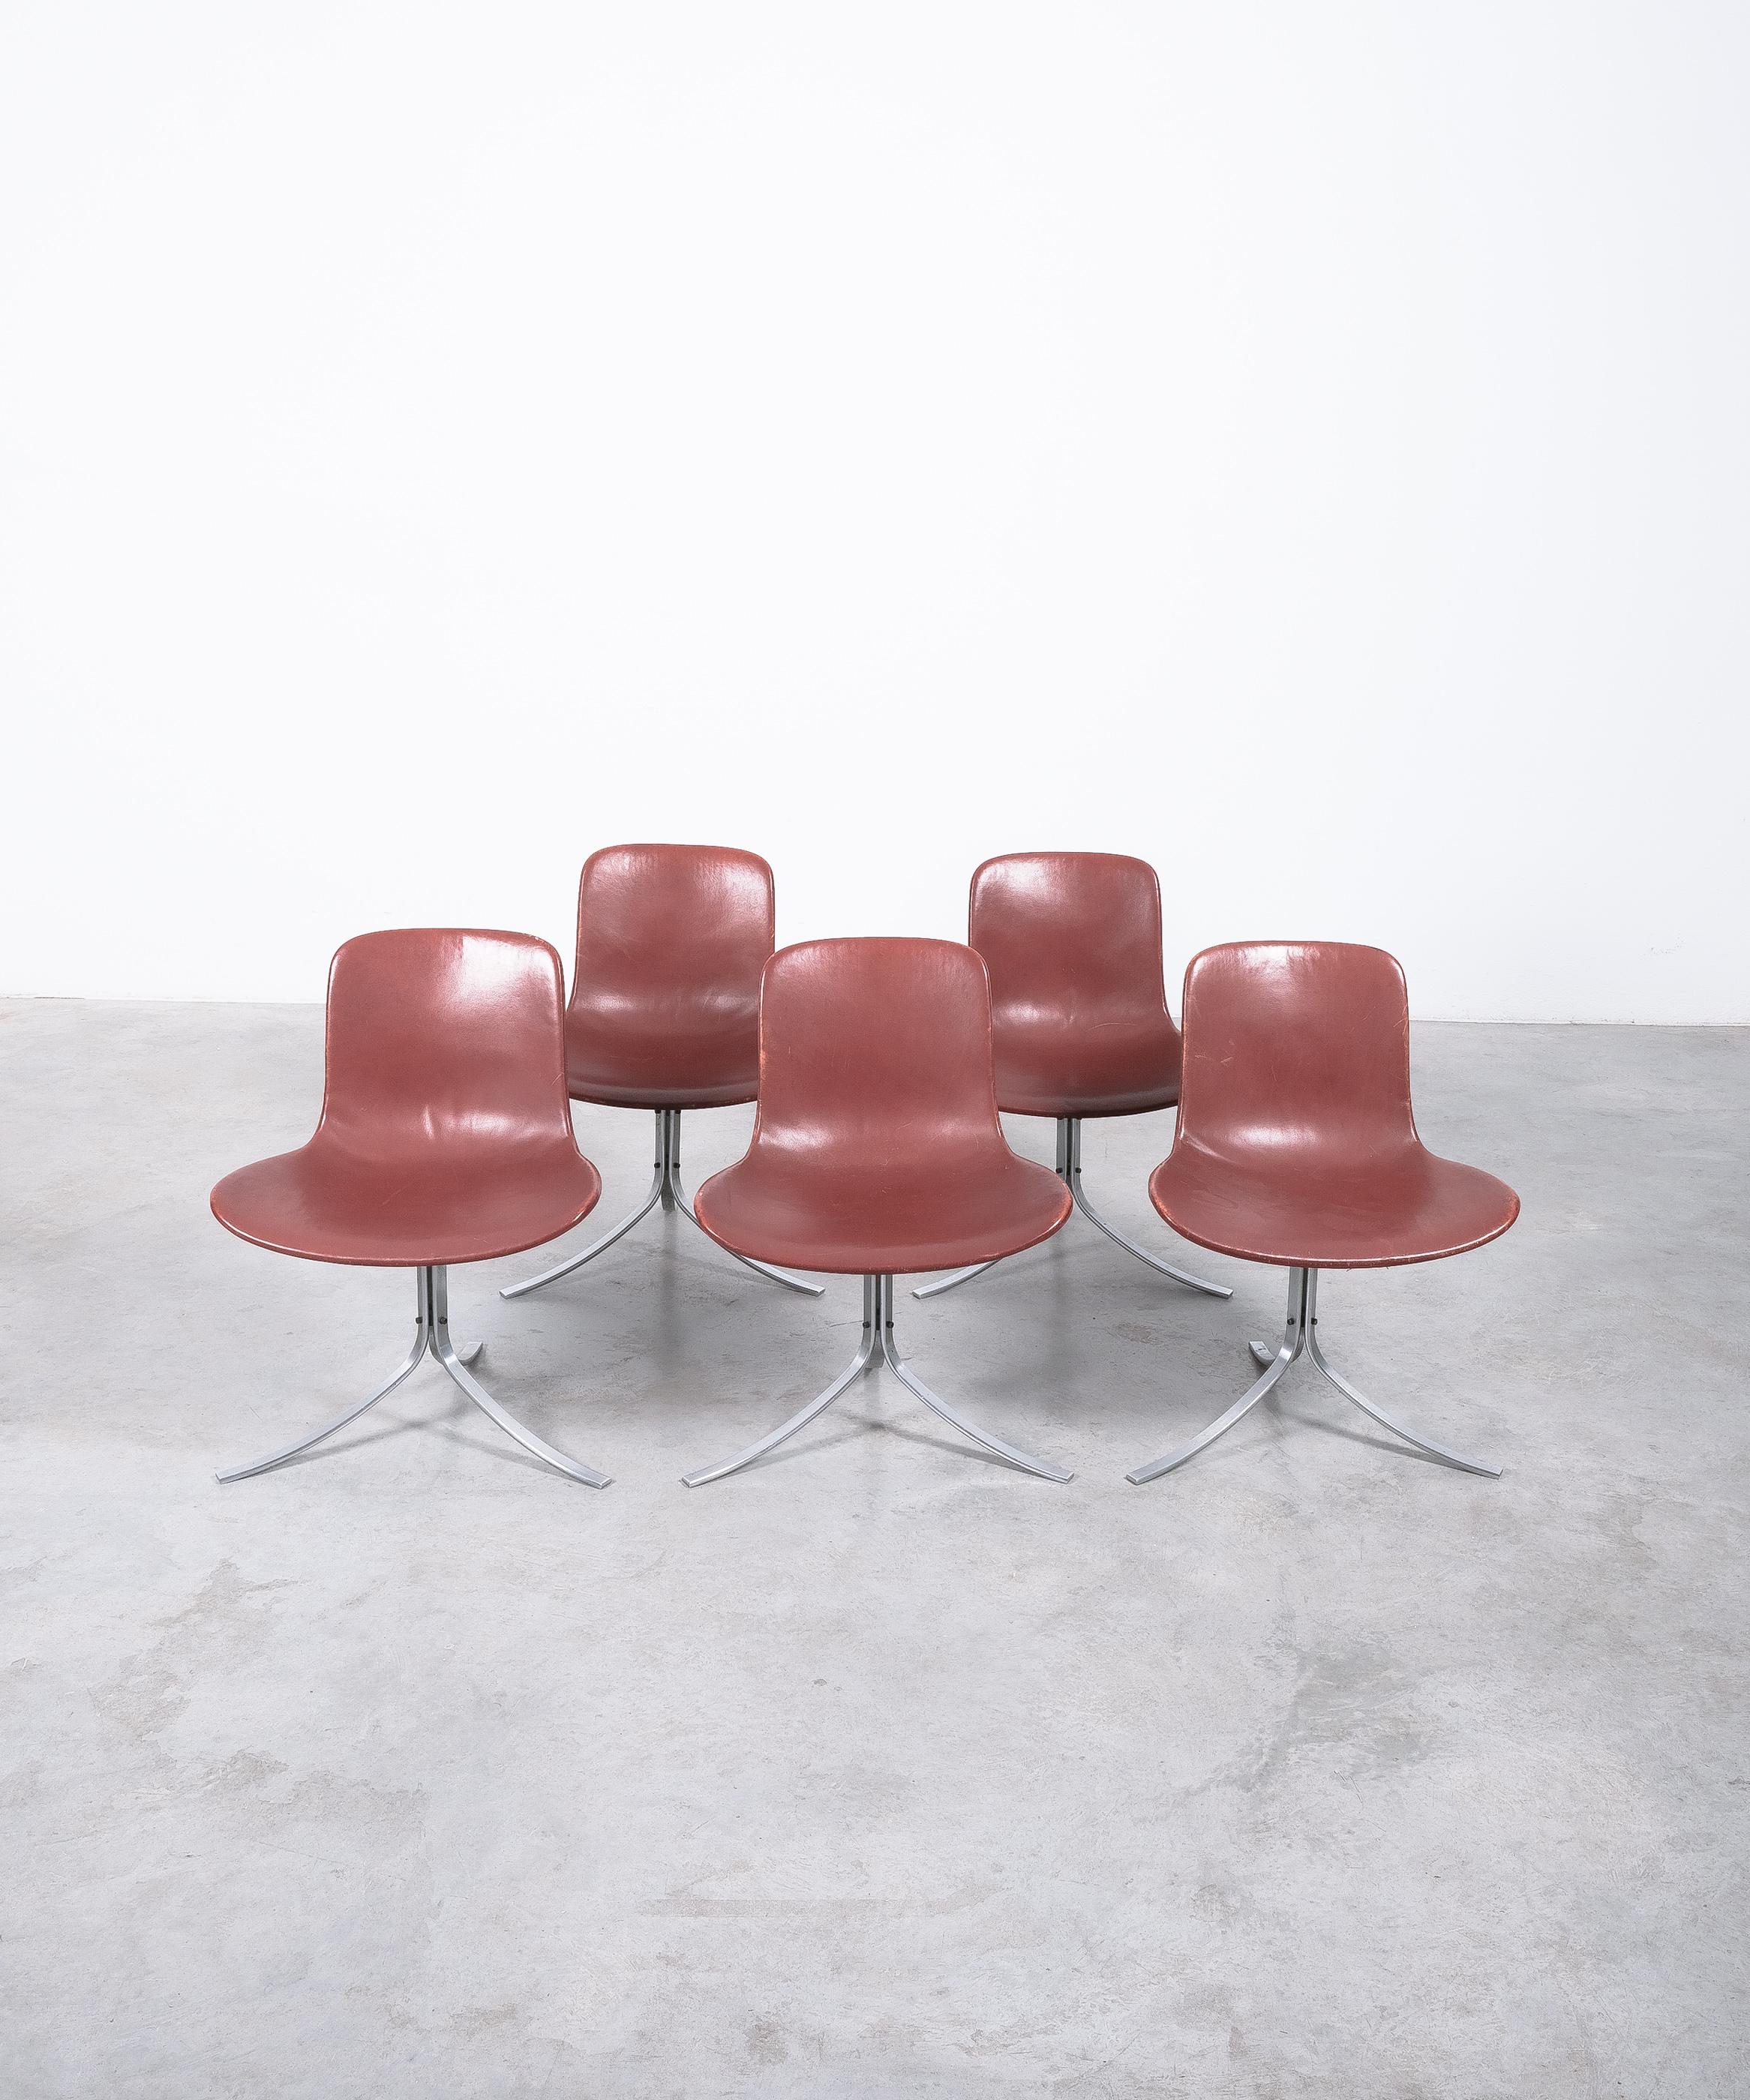 Frühe original 1960er PK9-Stühle für E. Kold Christensen (markiert), hergestellt ca. 1960-1970

Dieser Satz von 5 Stühlen wird einzeln verkauft und ist in einem hervorragenden Originalzustand.  Sie wurden von Sotheby's Spezialisten als original von